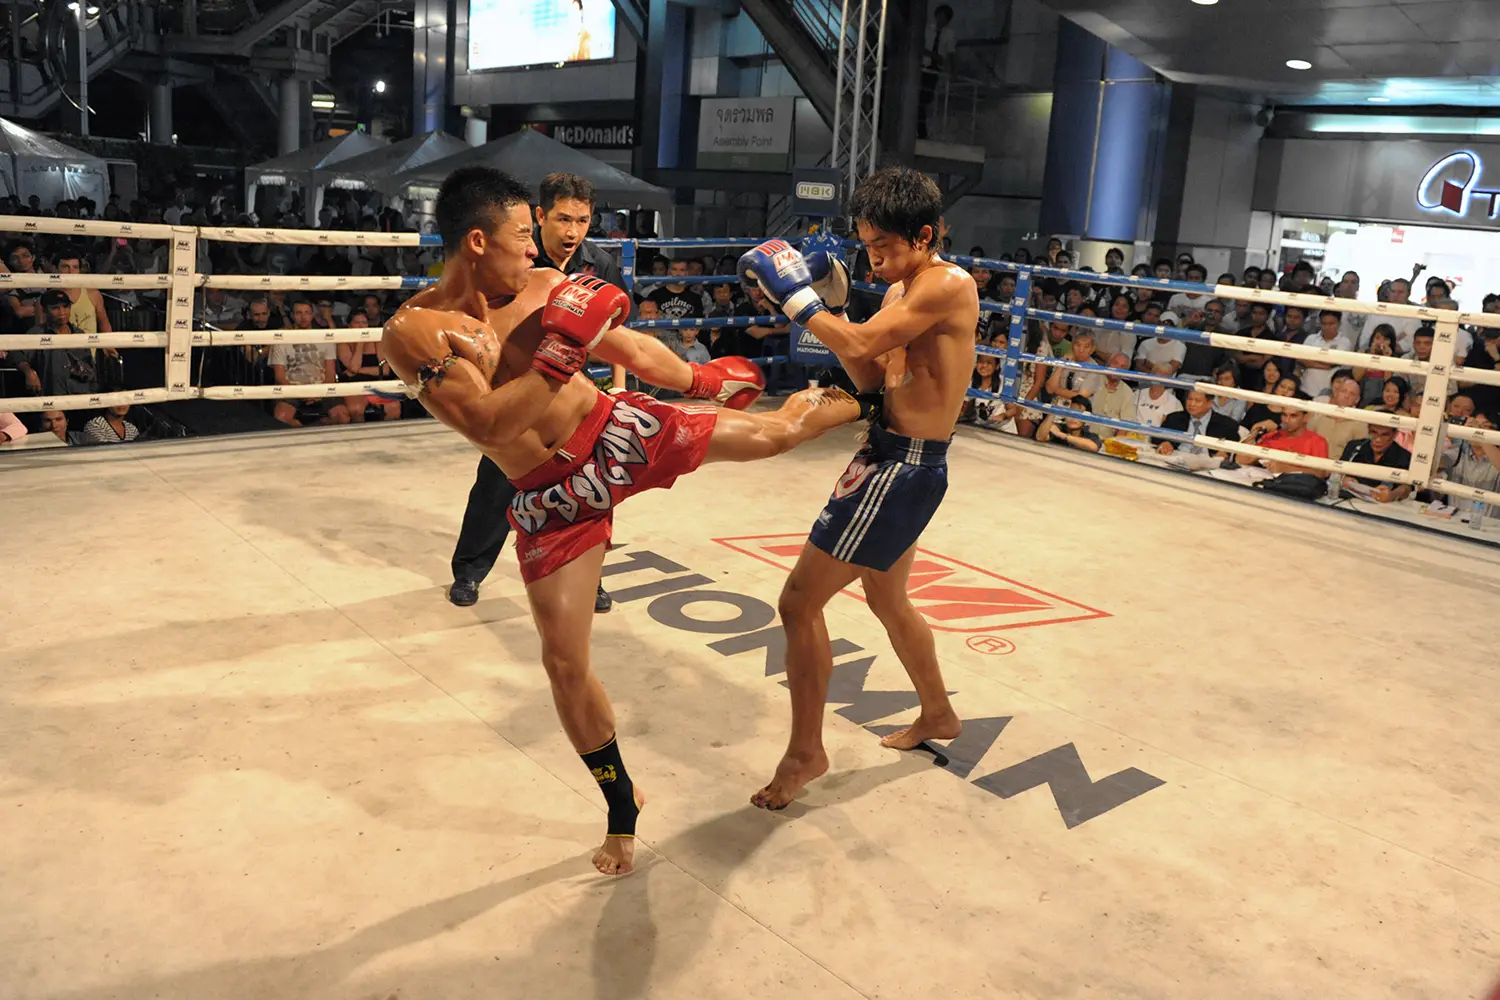 Μαχητές Muay Thai διαγωνίζονται σε έναν αγώνα ταϊλανδέζικου kickboxing στο MBK Fight Night στην Μπανγκόκ της Ταϊλάνδης.